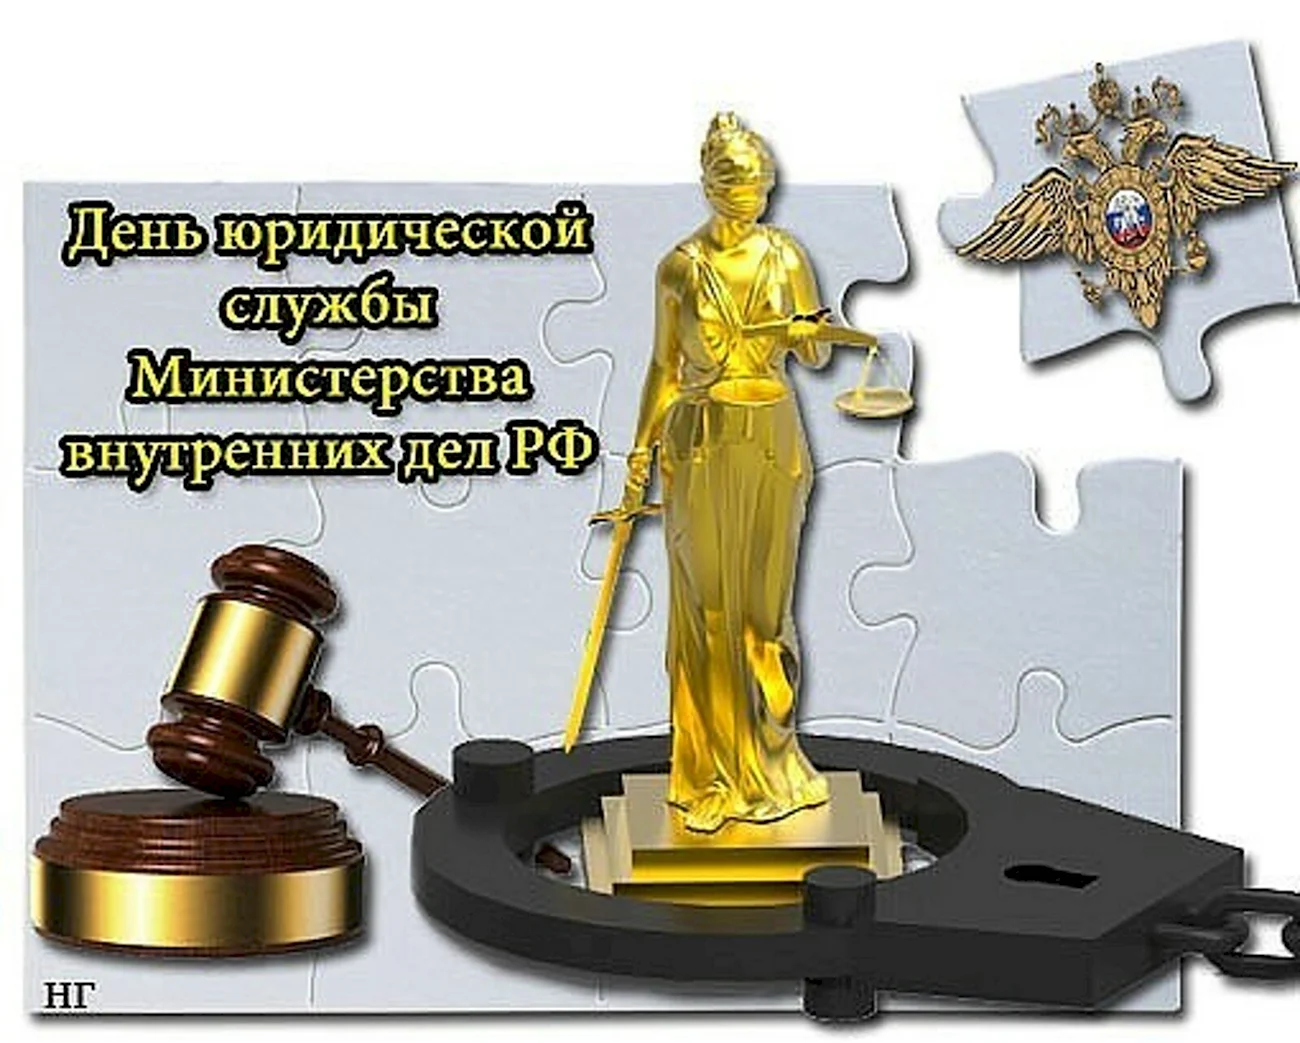 19 Июля день юридической службы Министерства внутренних дел РФ. Поздравление